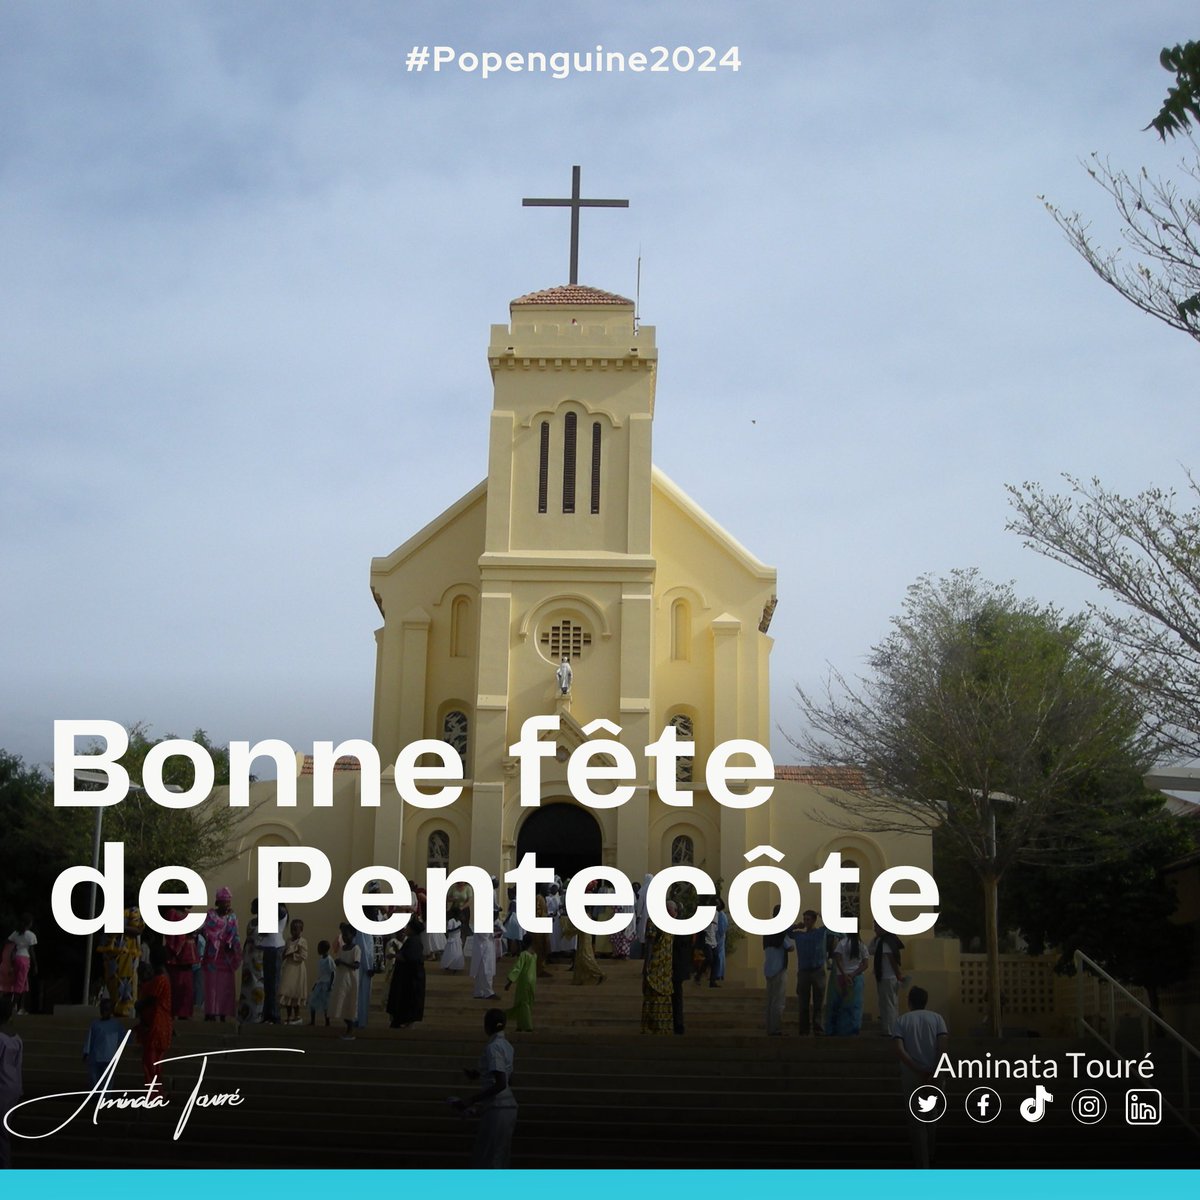 Bonne fête de #Pentecôte et bon pèlerinage Marial de Popenguine à toute la communauté chrétienne du #Sénégal. Que cette célébration soit emplie de foi, de partage, de paix et de joie pour chacun.